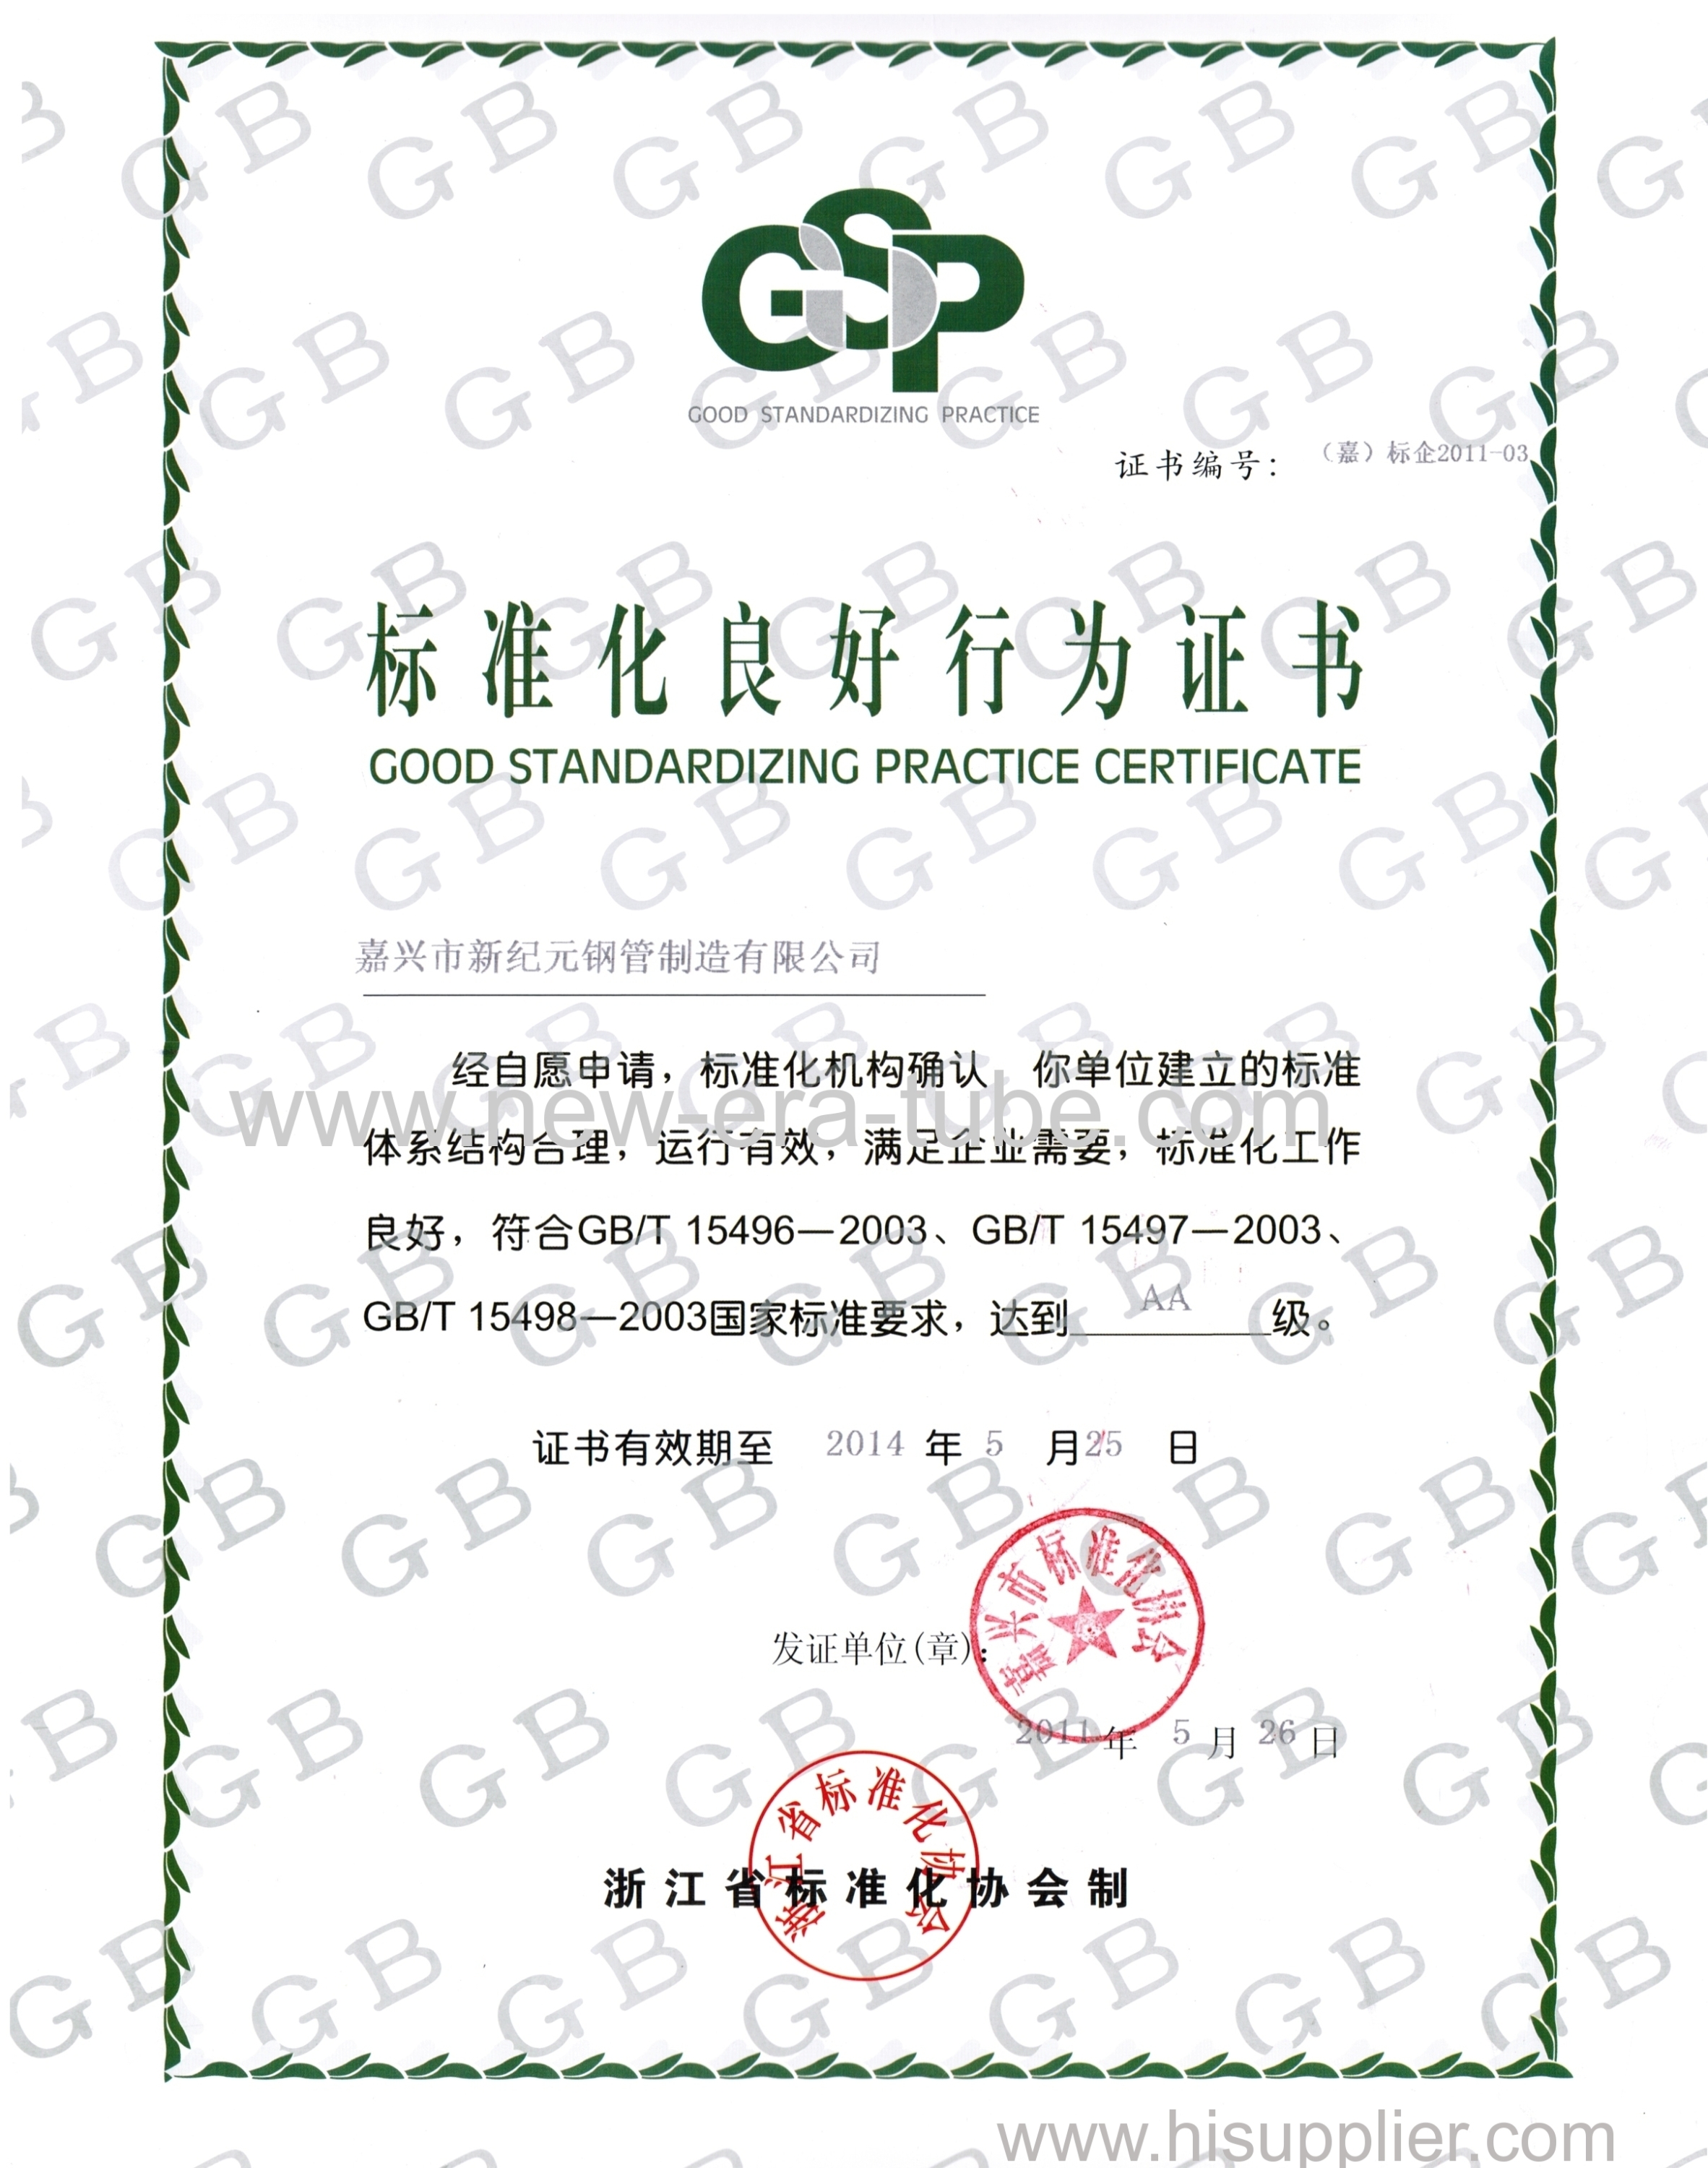 Standardizing Practice Certificate